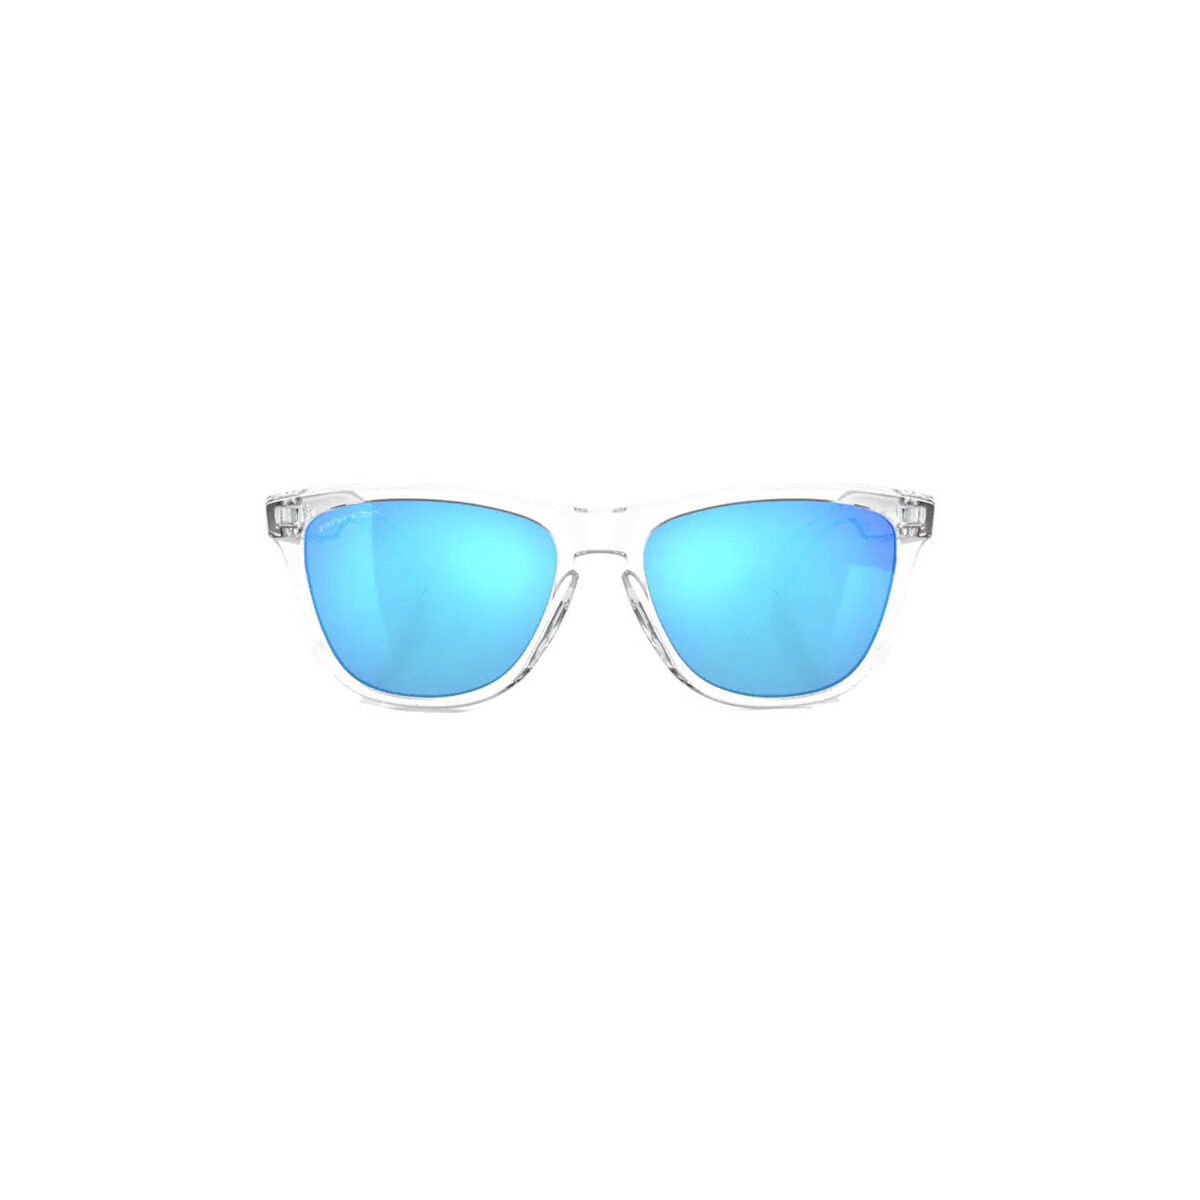 Montres & Bijoux Lunettes de soleil Oakley OO9013 FROGSKINS Lunettes de soleil, Transparent/Bleu, 55 mm Autres